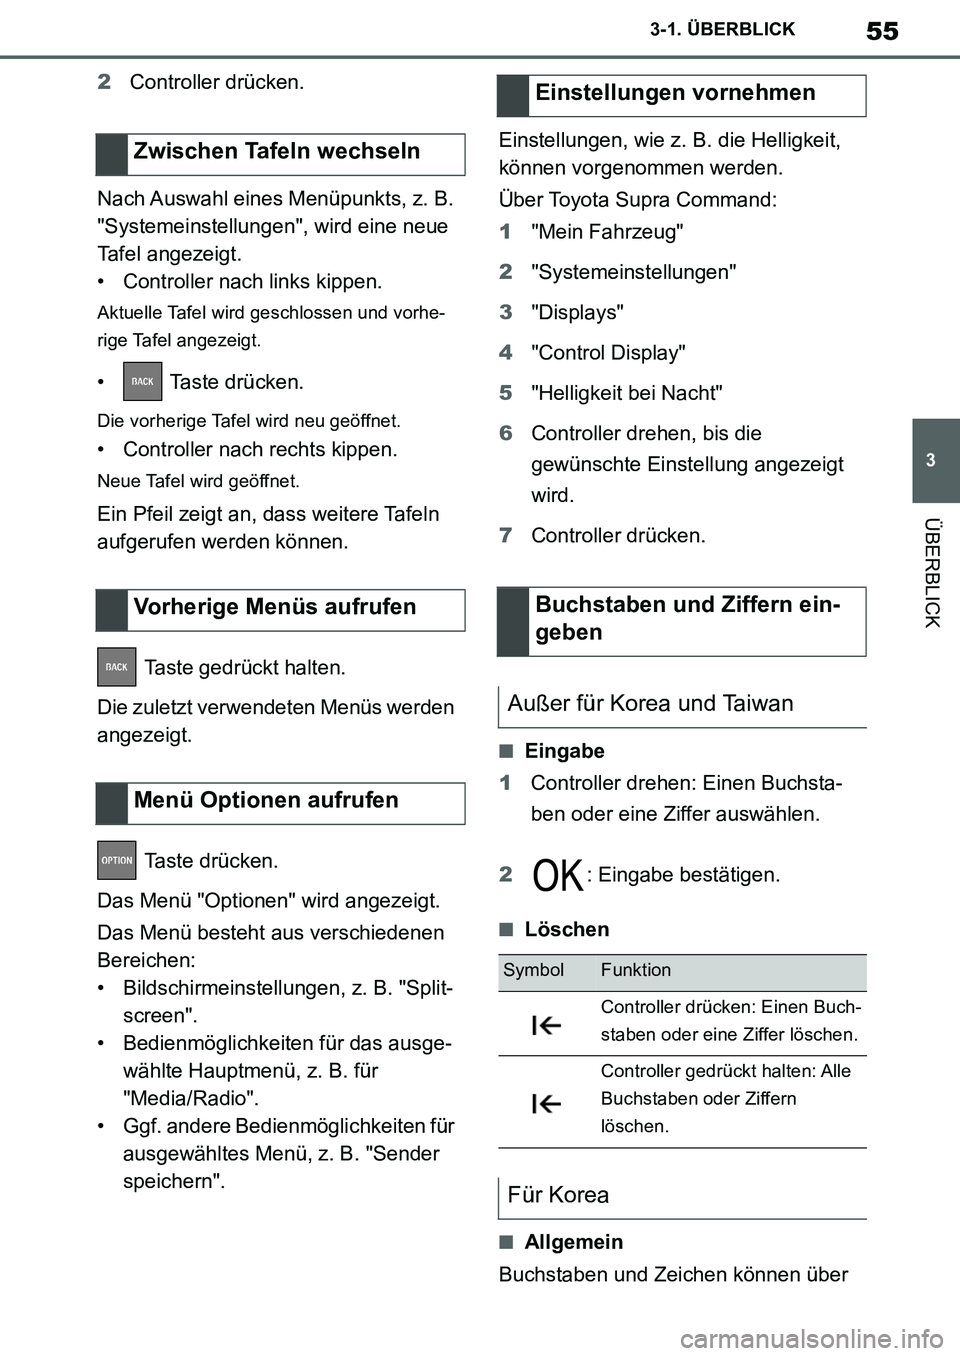 TOYOTA SUPRA 2020  Betriebsanleitungen (in German) 55
3
Supra Owners Manual_EM
3-1. ÜBERBLICK
ÜBERBLICK
2Controller drücken.
Nach Auswahl eines Menüpunkts, z. B. 
"Systemeinstellungen", wird eine neue 
Tafel angezeigt.
• Controller nach links k